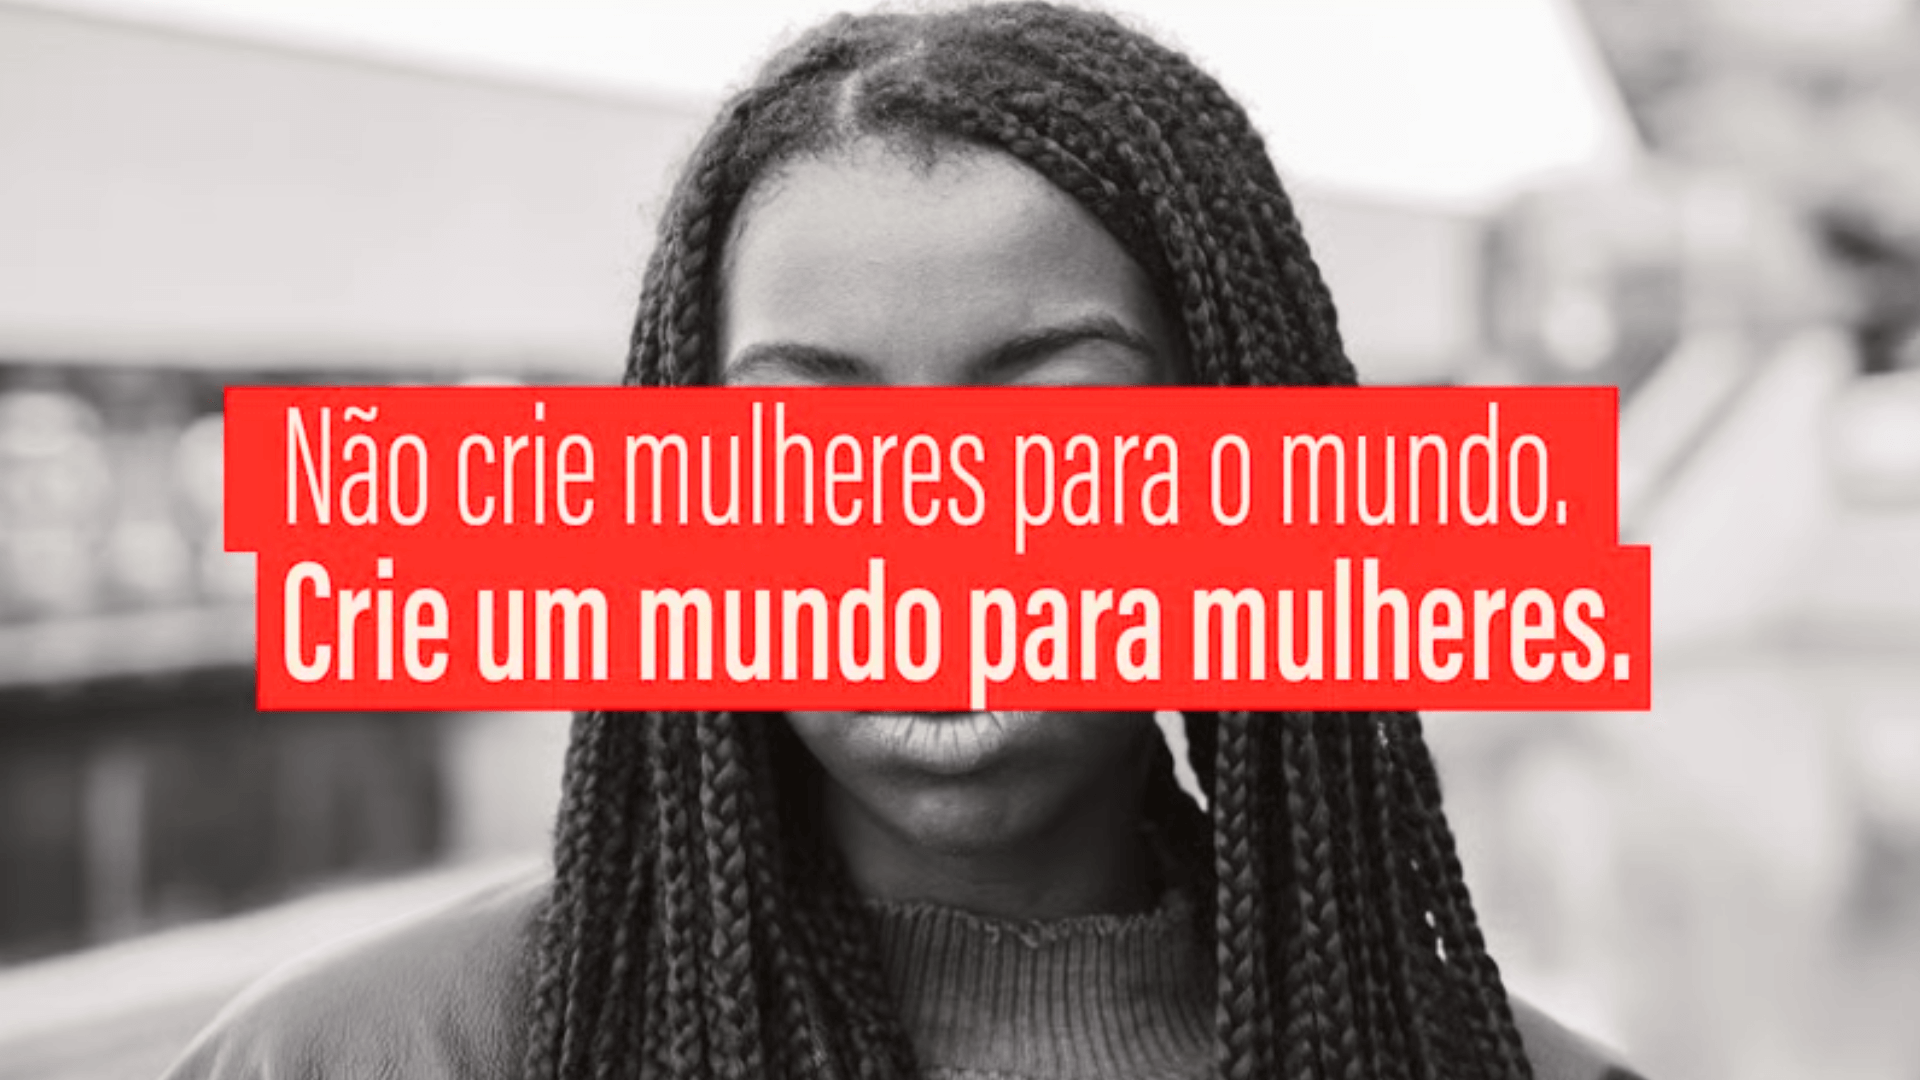 Vakinha e MariaSãoPaulo lançam campanha para promover empreendedorismo feminino